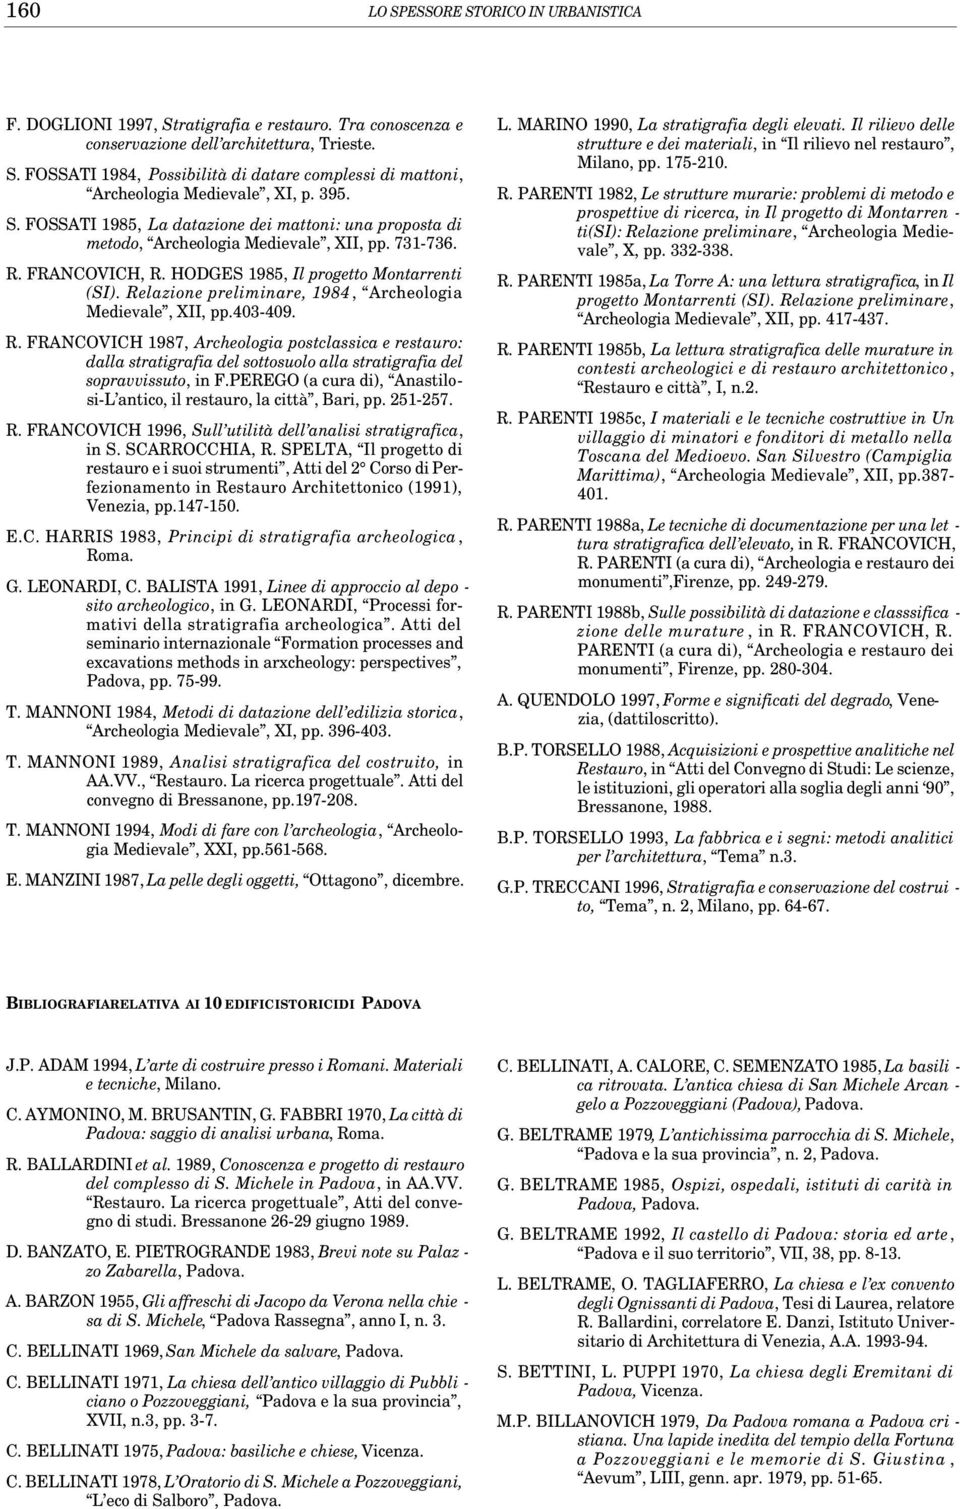 Relazione preliminare, 1984, Archeologia Medievale, XII, pp.403-409. R.